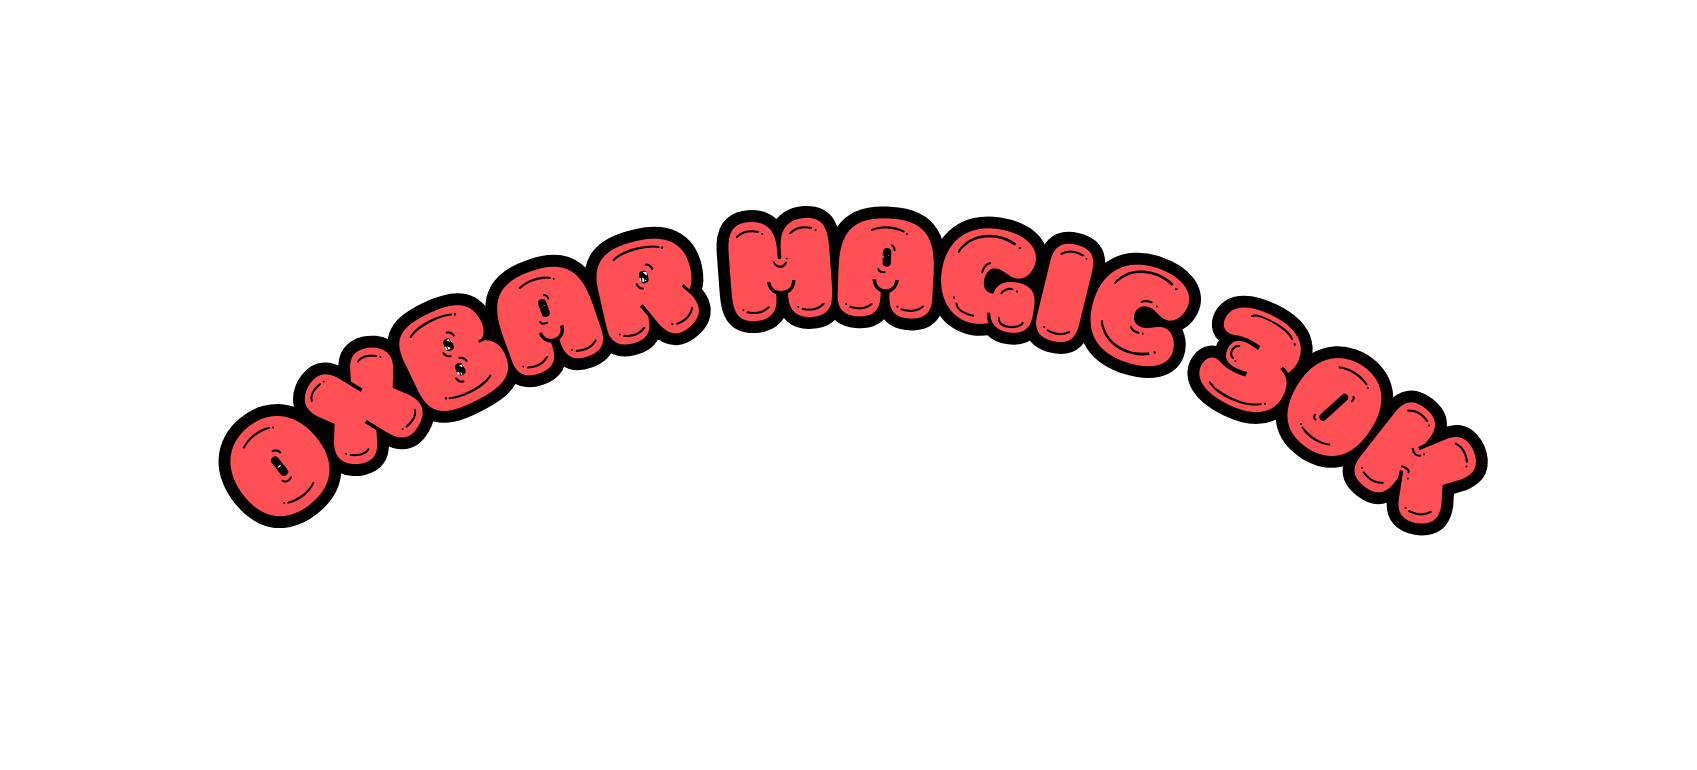 Oxbar magic 30k